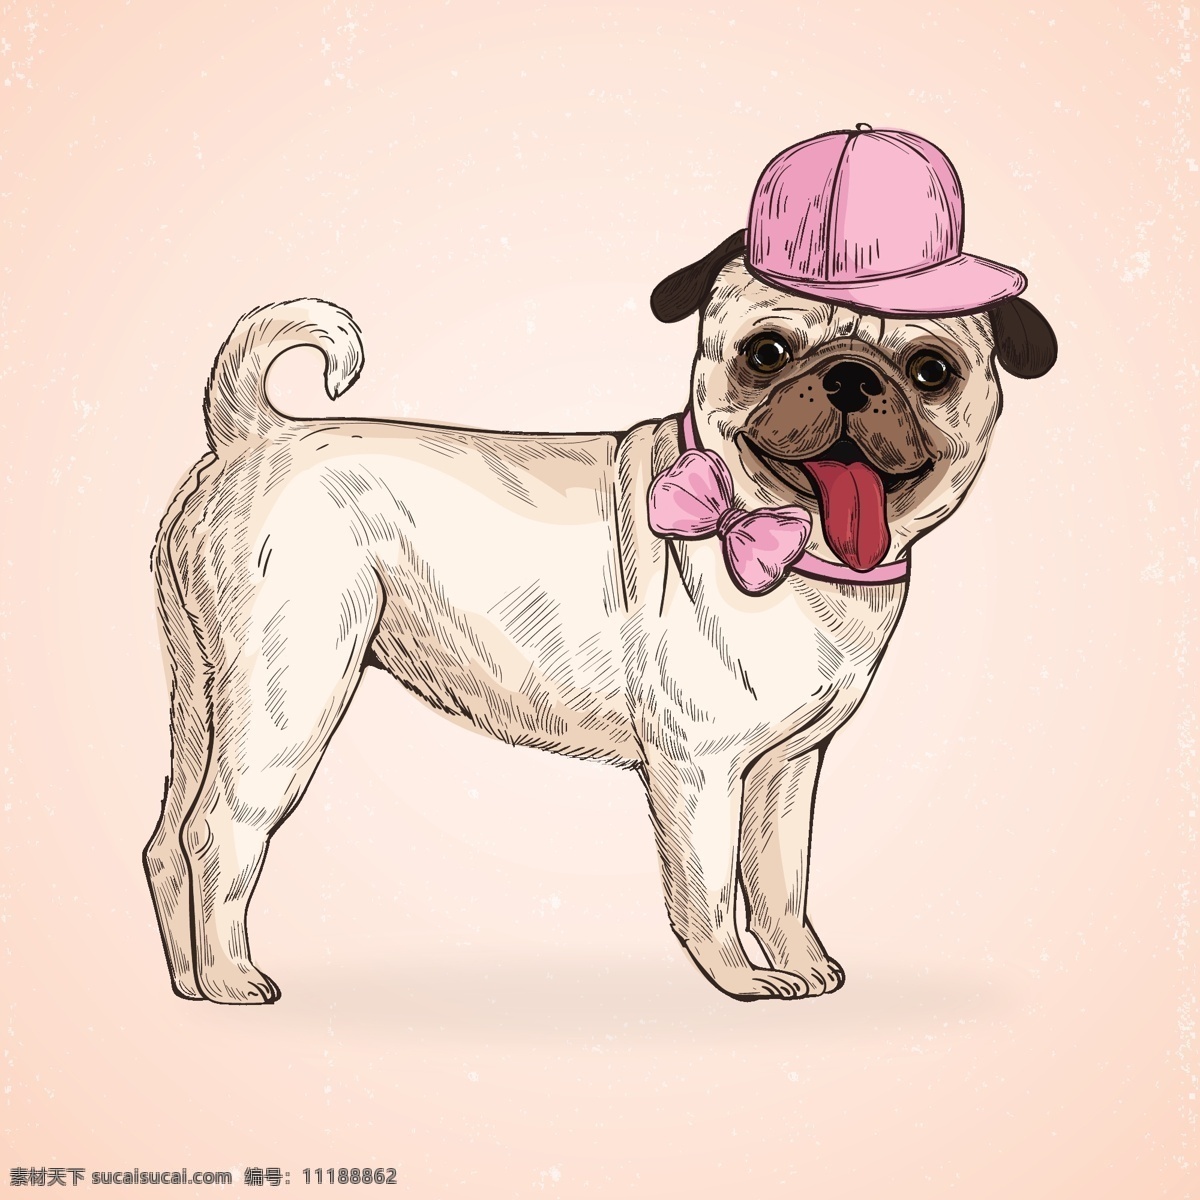 戴帽 动物 搞笑 狗 哈巴狗 卡通 卡通狗 可爱 可爱宠物 领结 犬 手绘 戴 帽